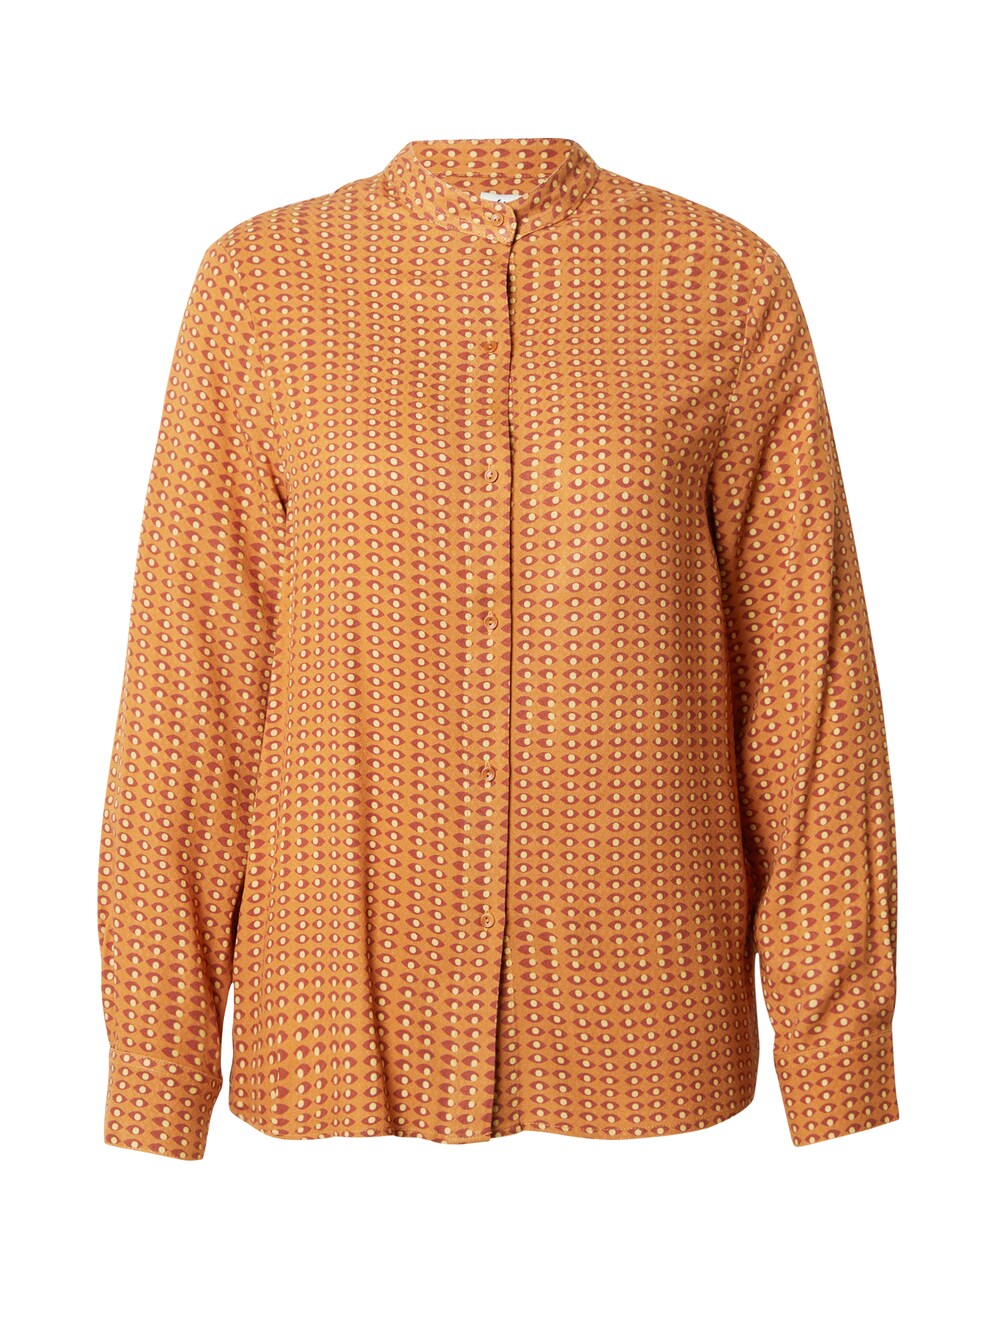 Блузка Brava Fabrics, апельсин